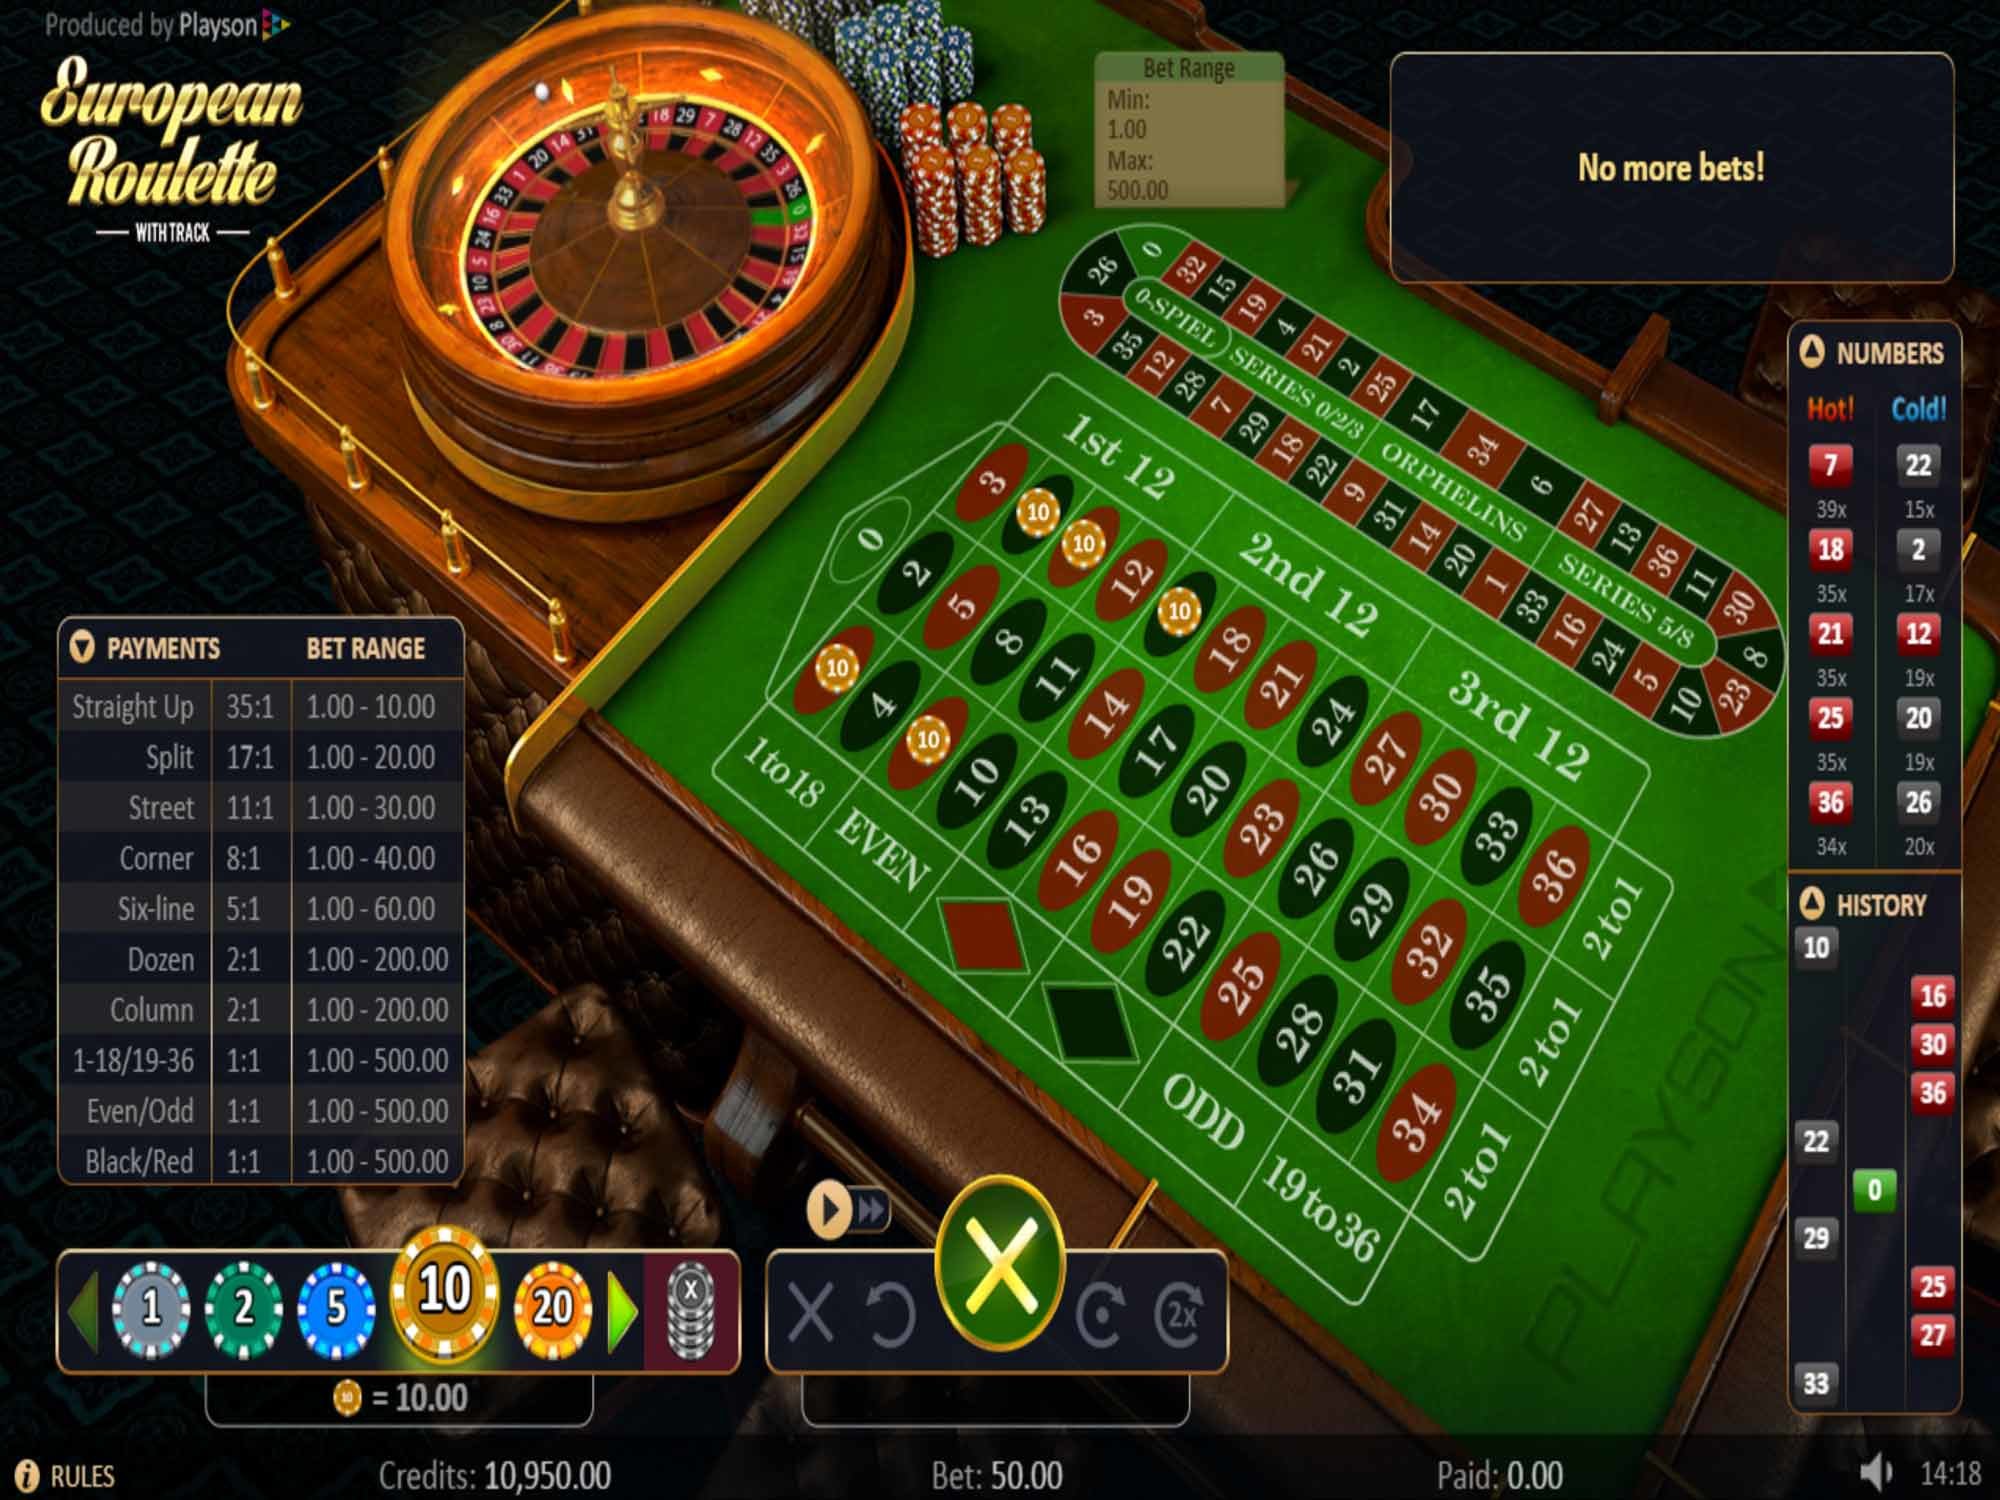 Bästa casino 35394